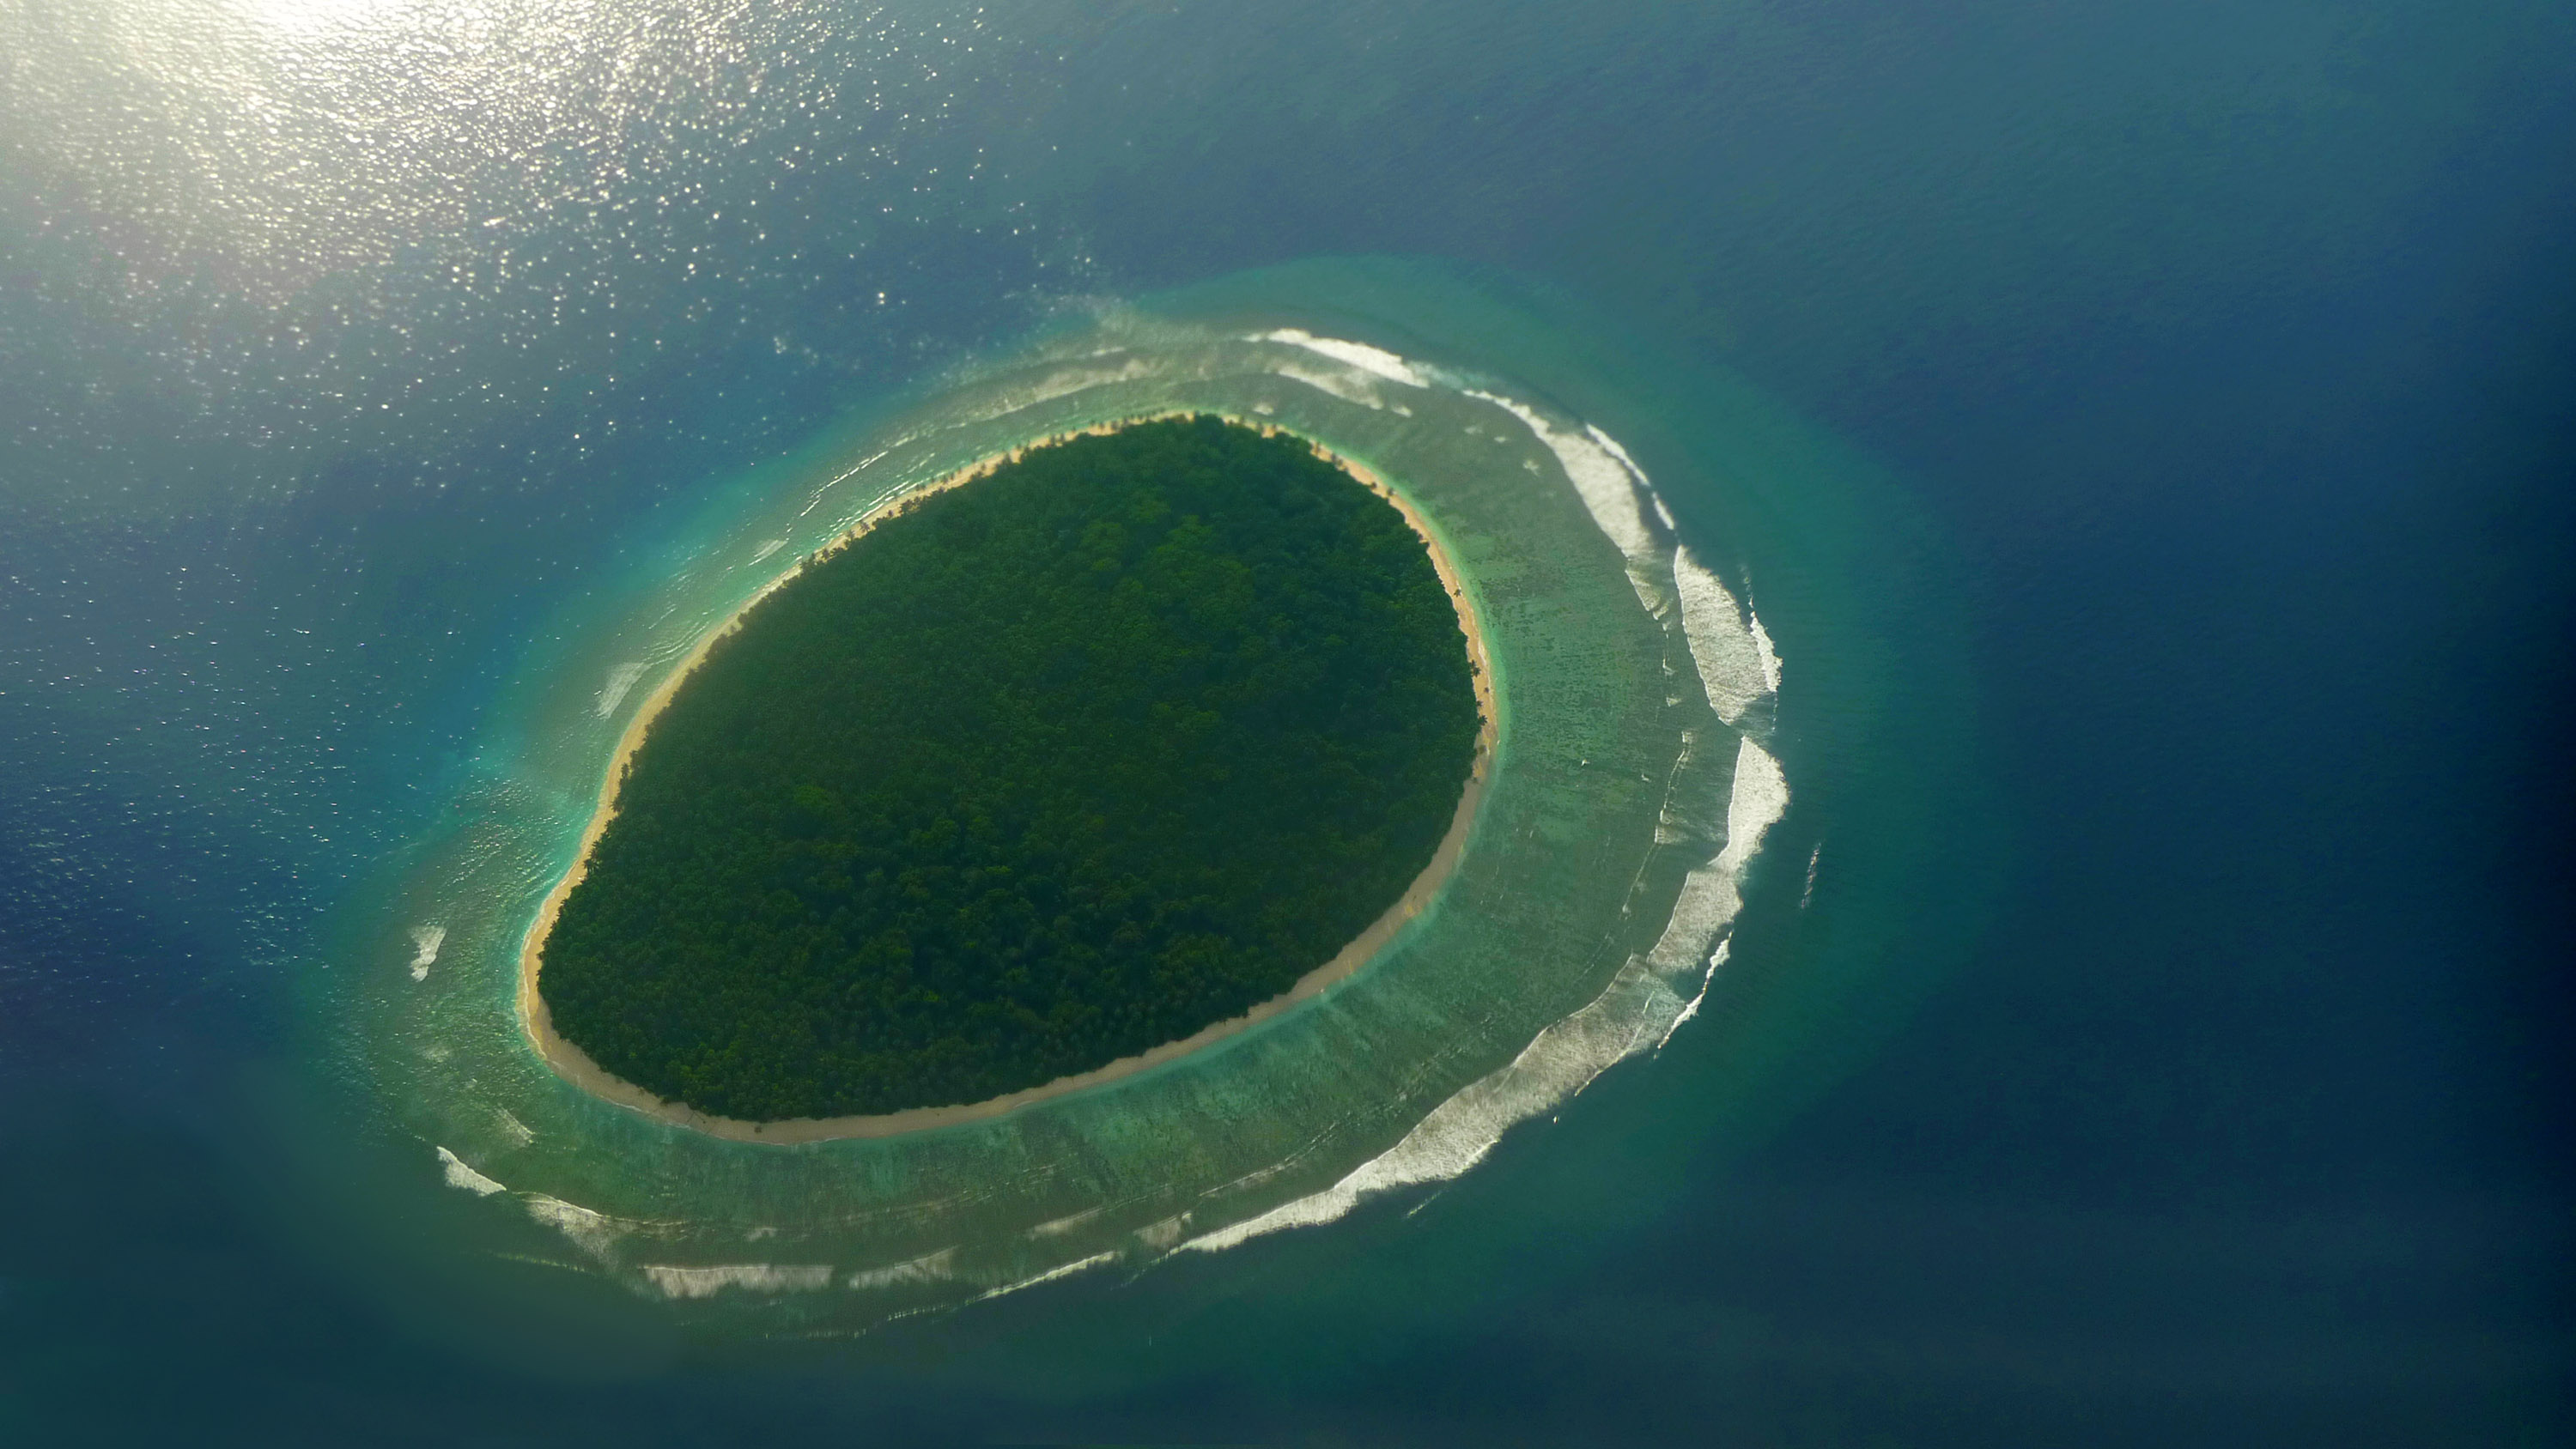 Remote island. Необитаемые острова. Необитаемые острова Тихого океана. Необитаемые острова пригодные для жизни. Необитаемые небольшие острова в тихом океане.